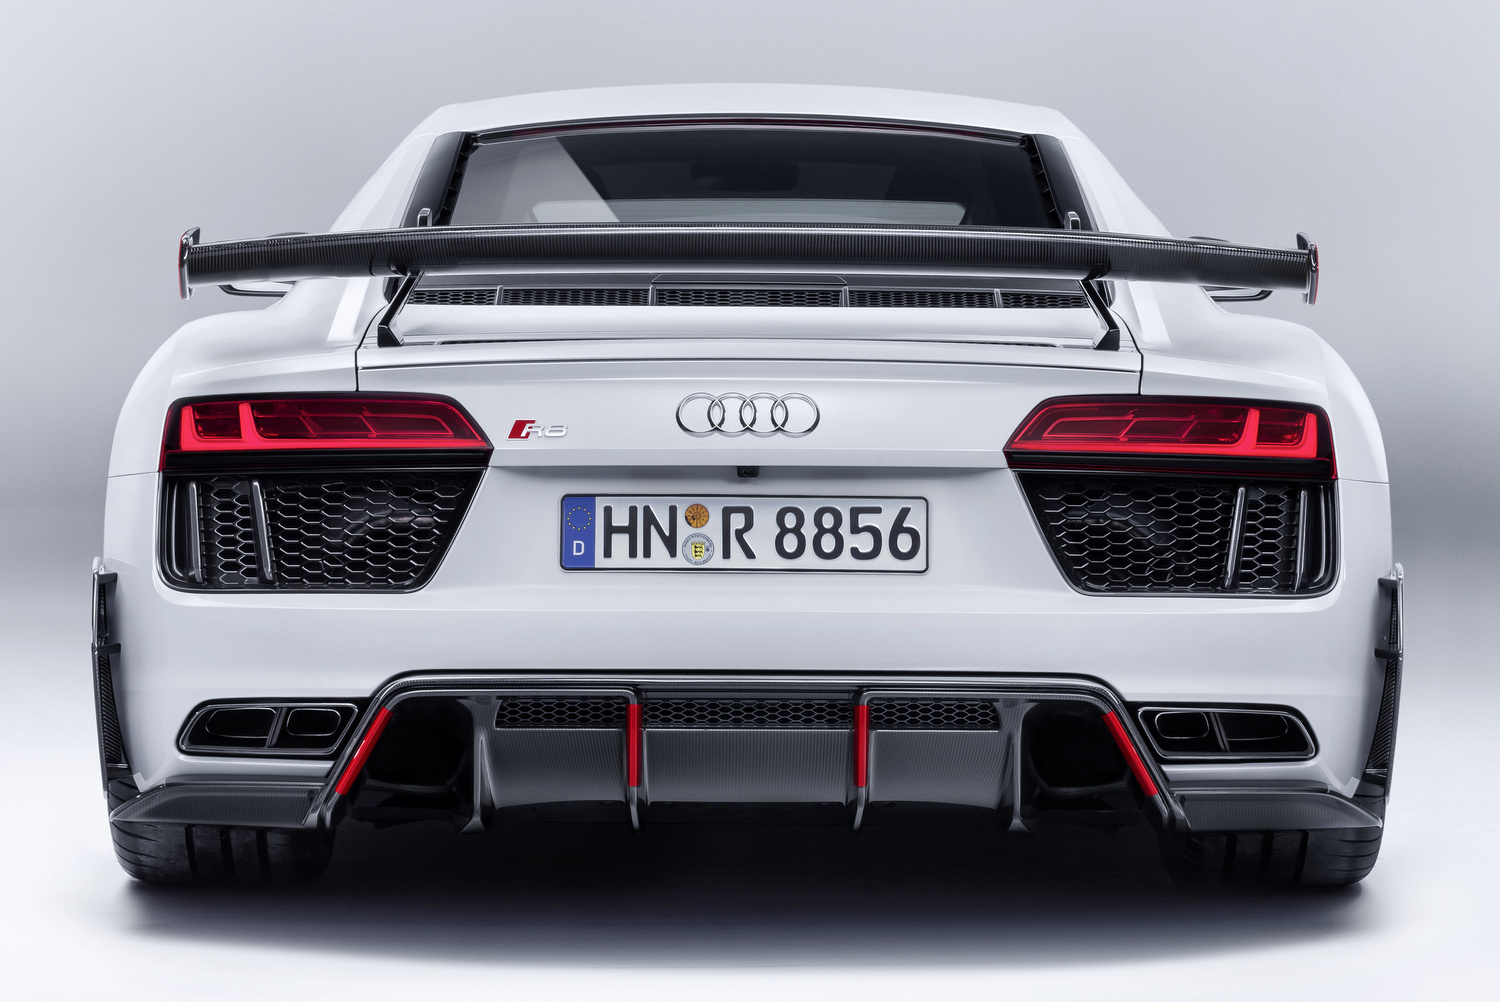 Audi Sport Performance alkatrészek az Audi R8 és Audi TT modellekhez 4